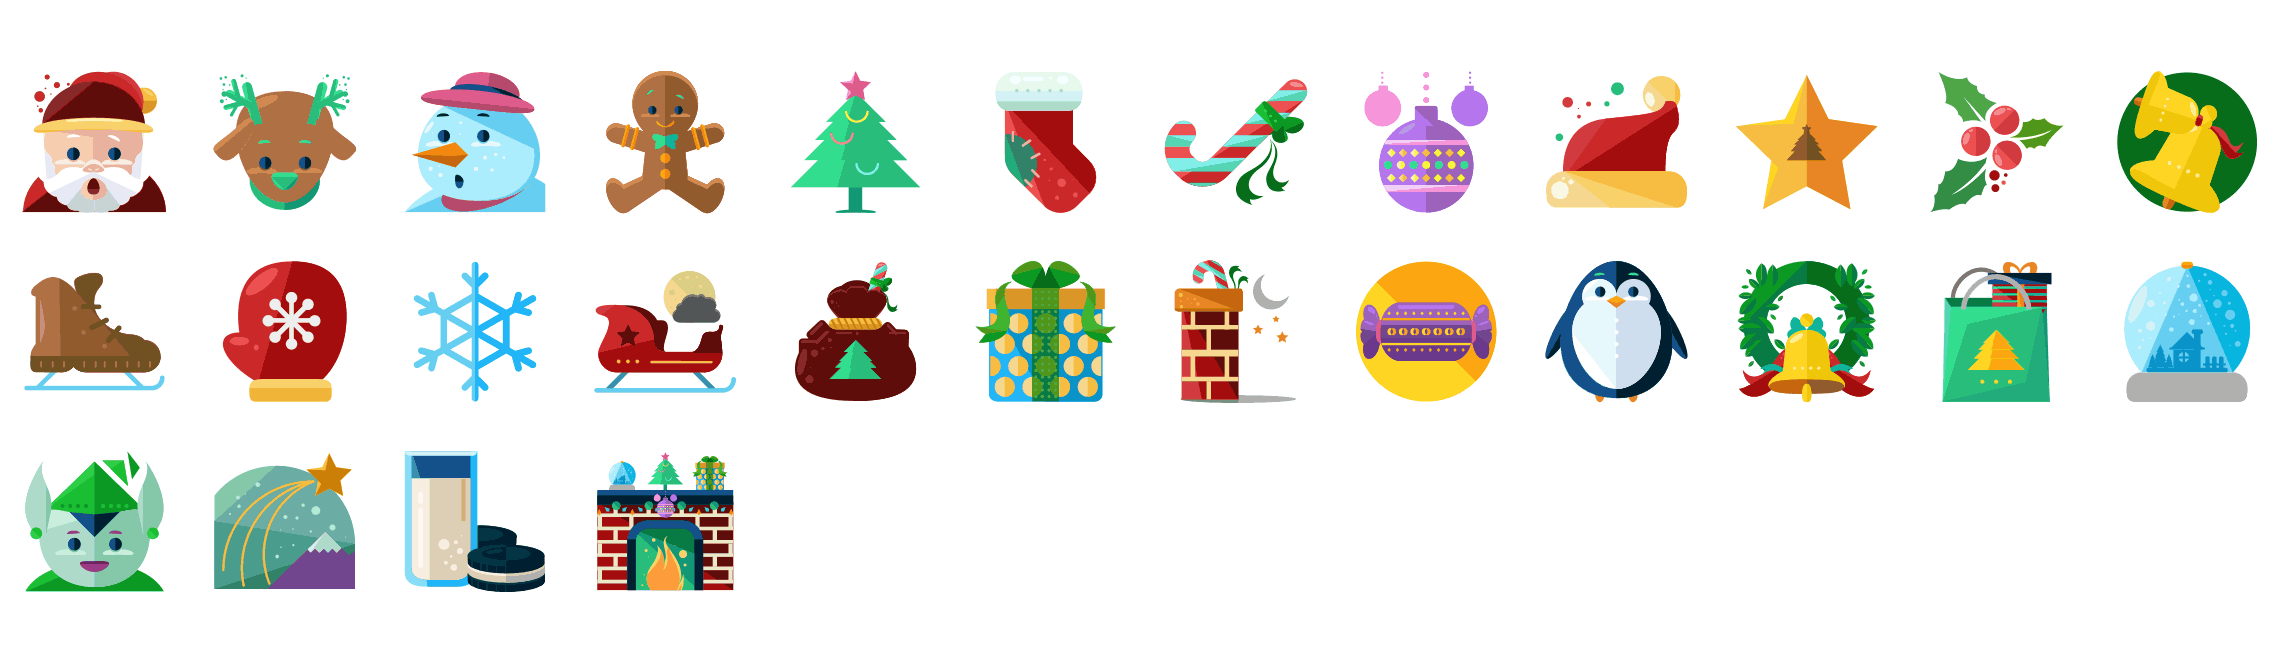 Christmas-flat-icons